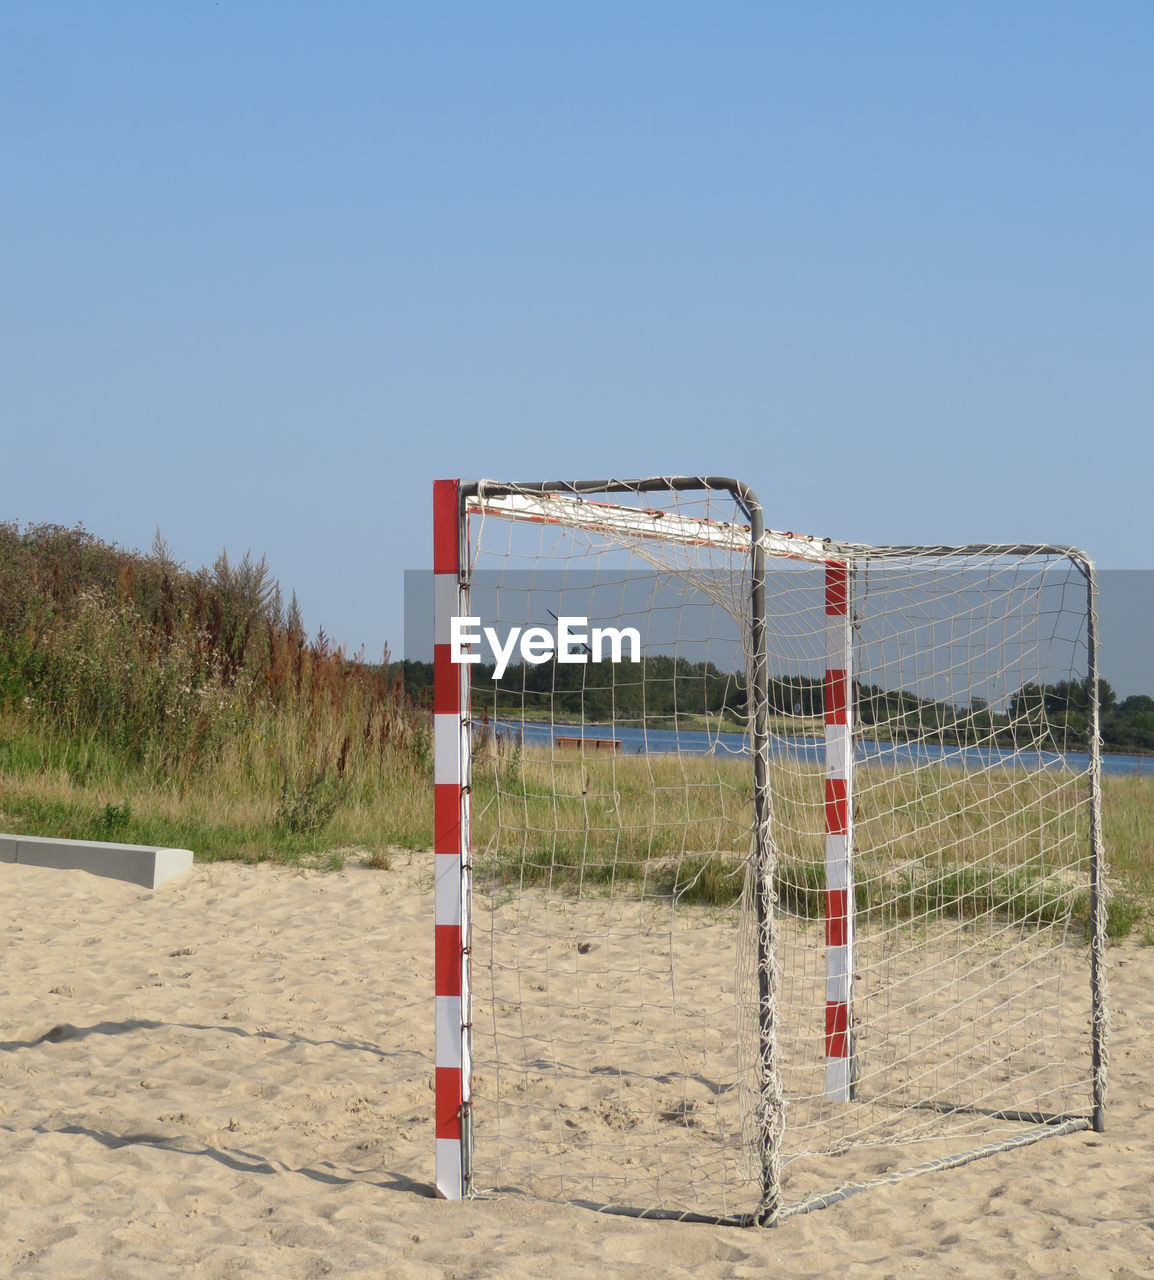 Soccer goal on sand against clear blue sky